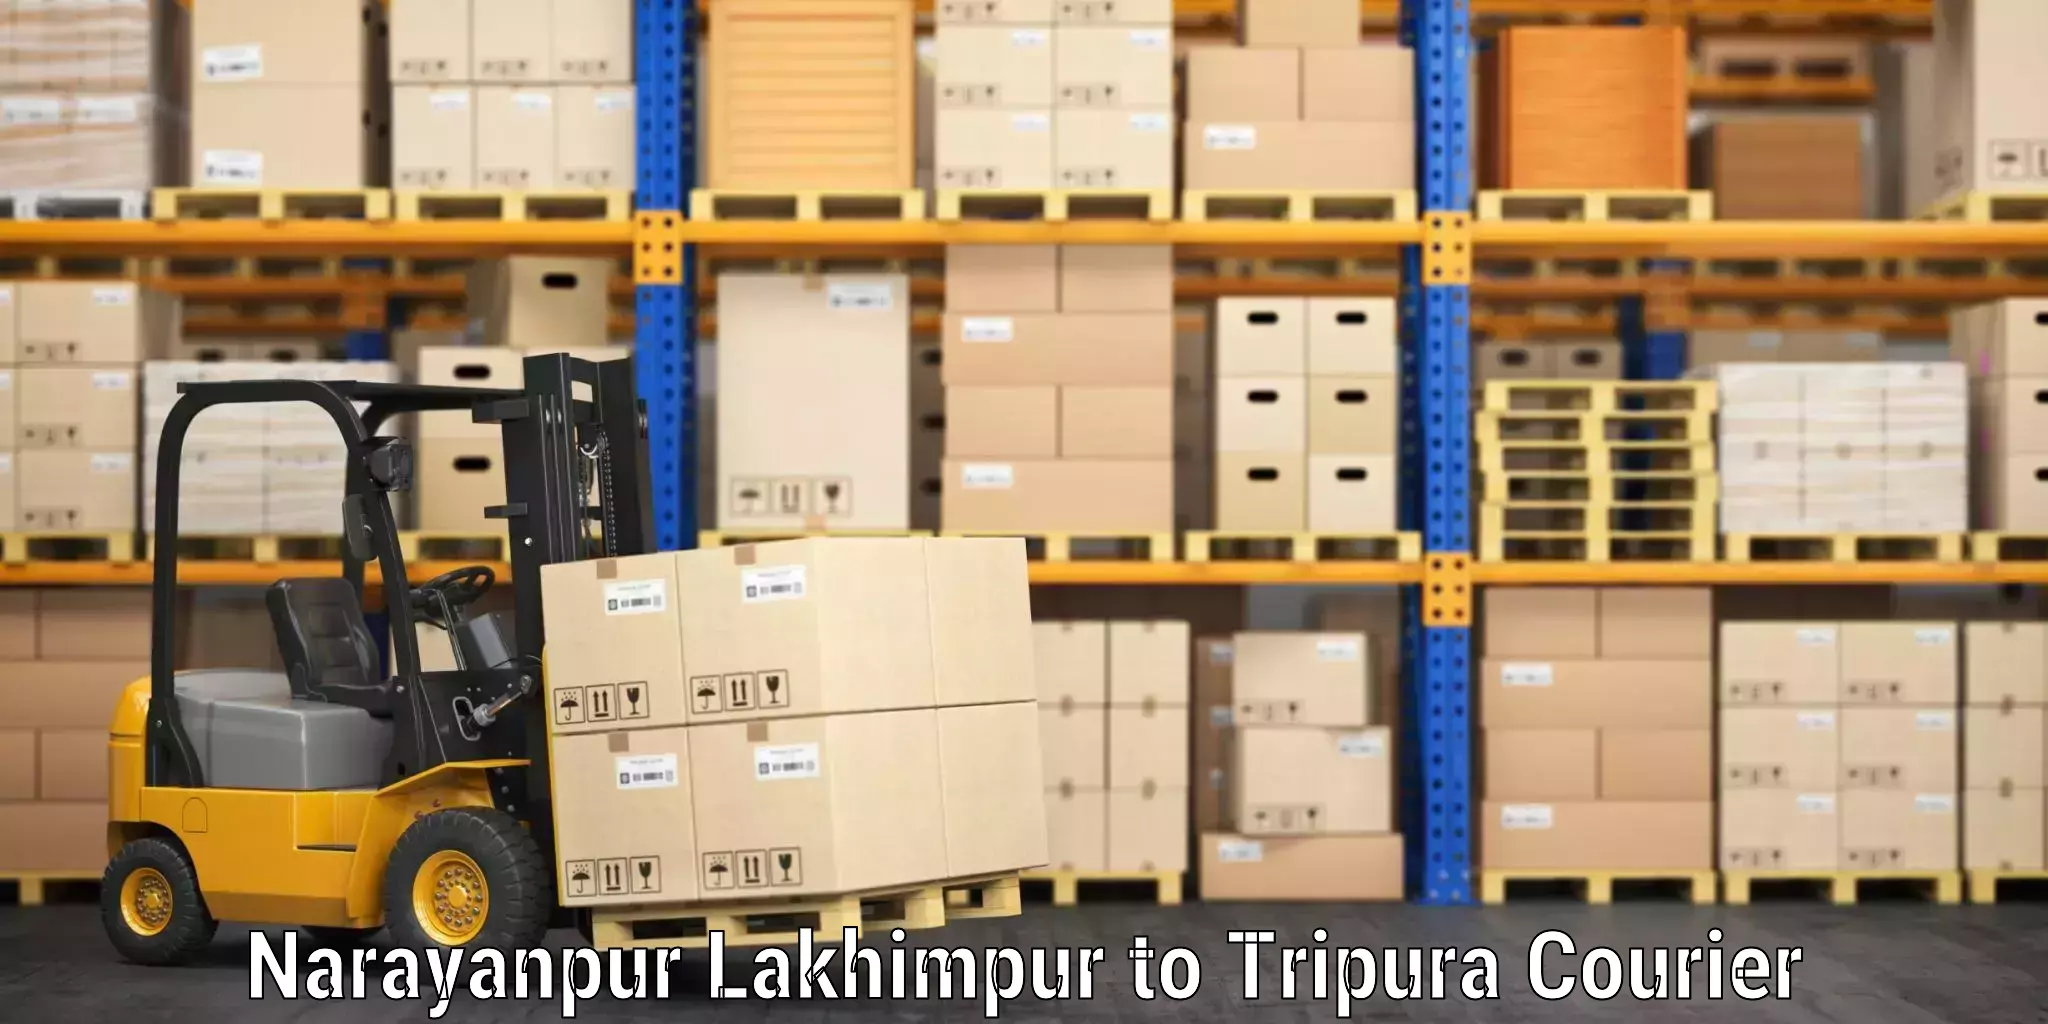 Baggage shipping service in Narayanpur Lakhimpur to Tripura